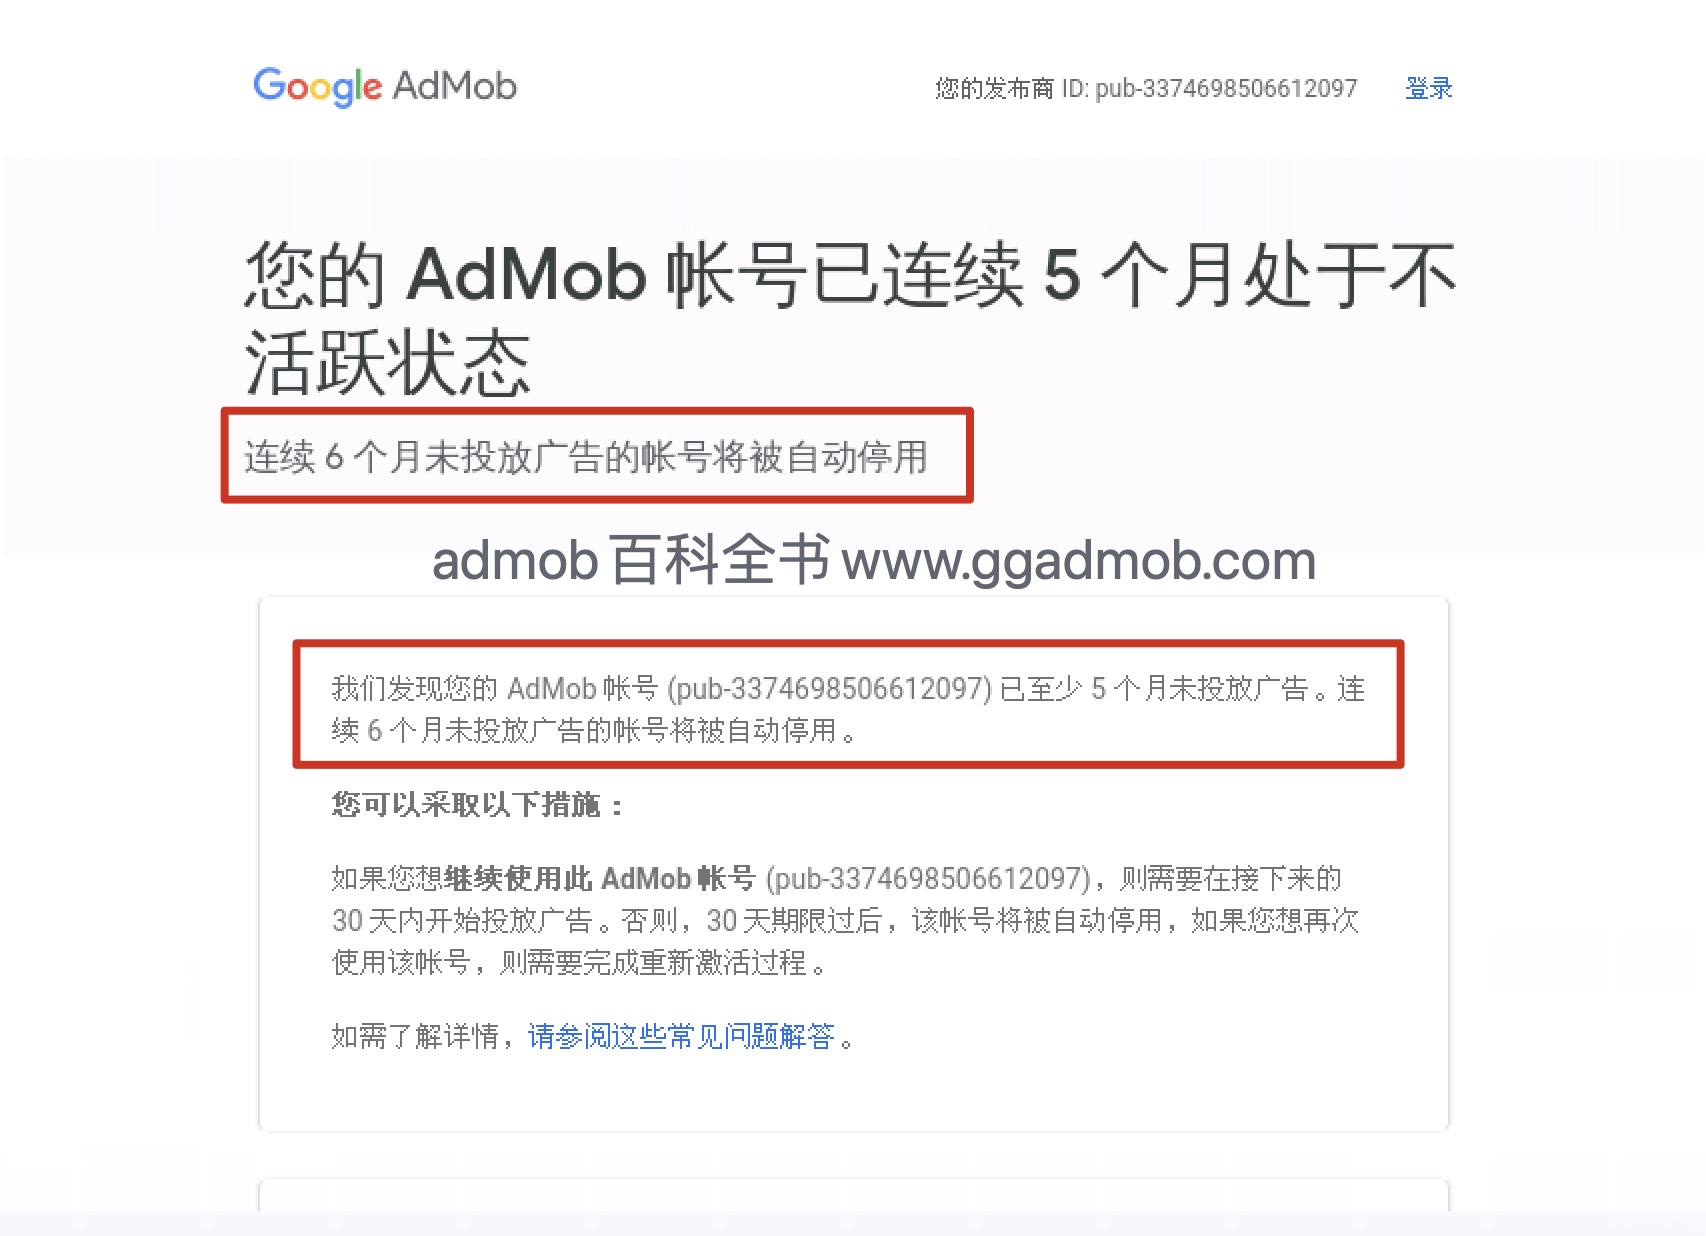 您的AdMob账号处于不活跃状态，连续6个月未投放广告的账号将被停用-GG联盟挑战